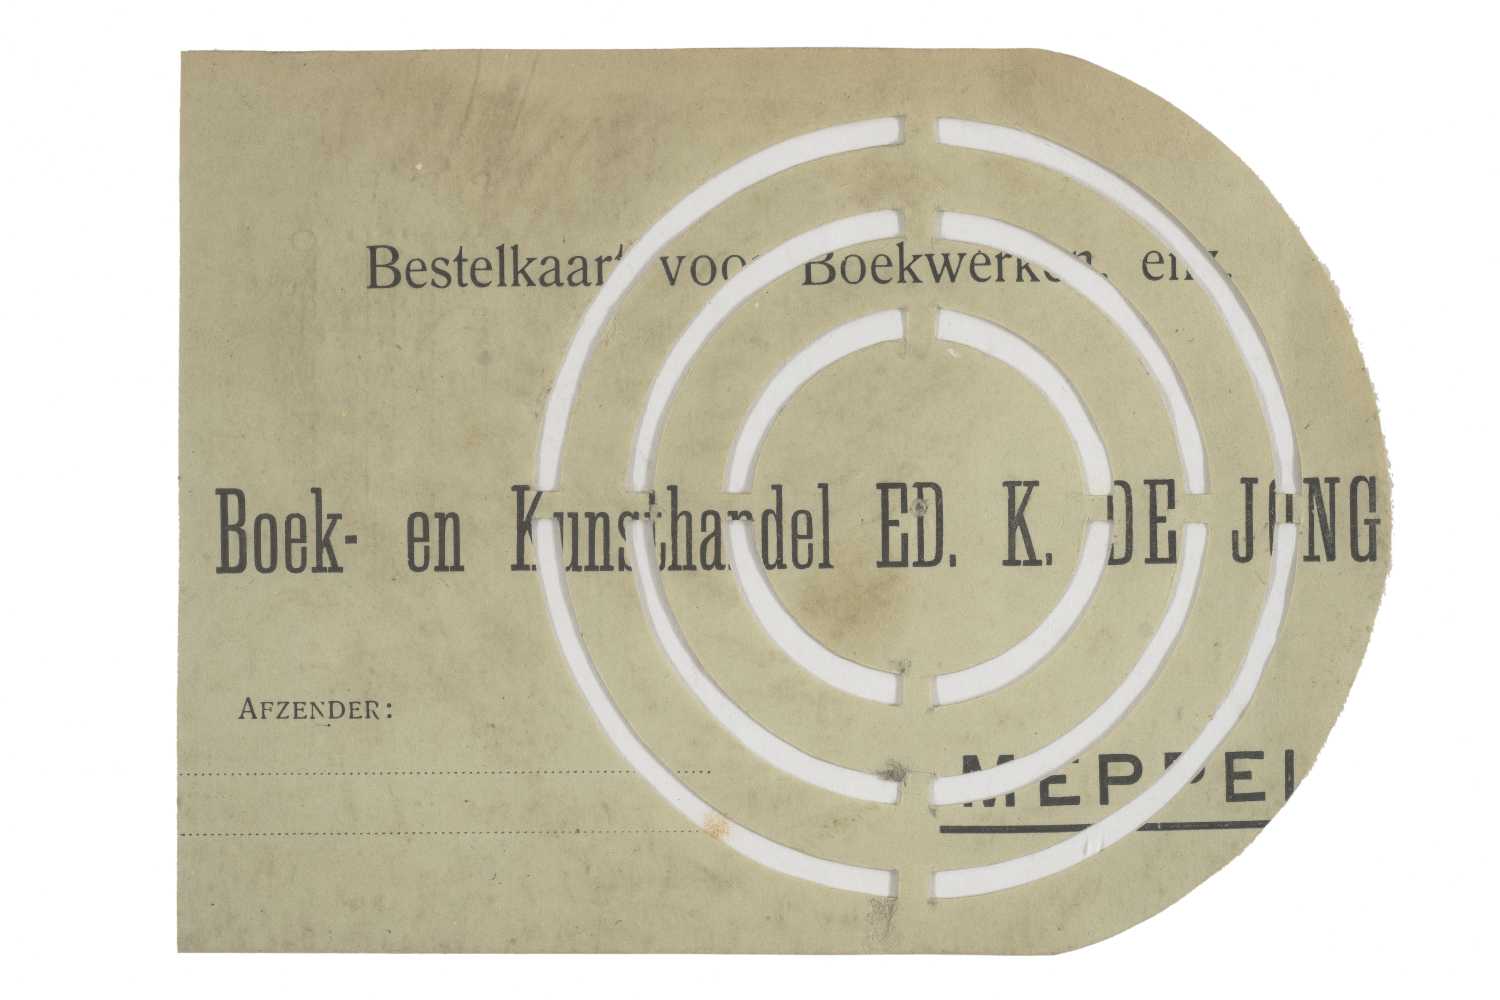 Voorwerp uit notitieboekje van Zernike, voor- en achterzijdeObject from Zernike’s notebook, front and back